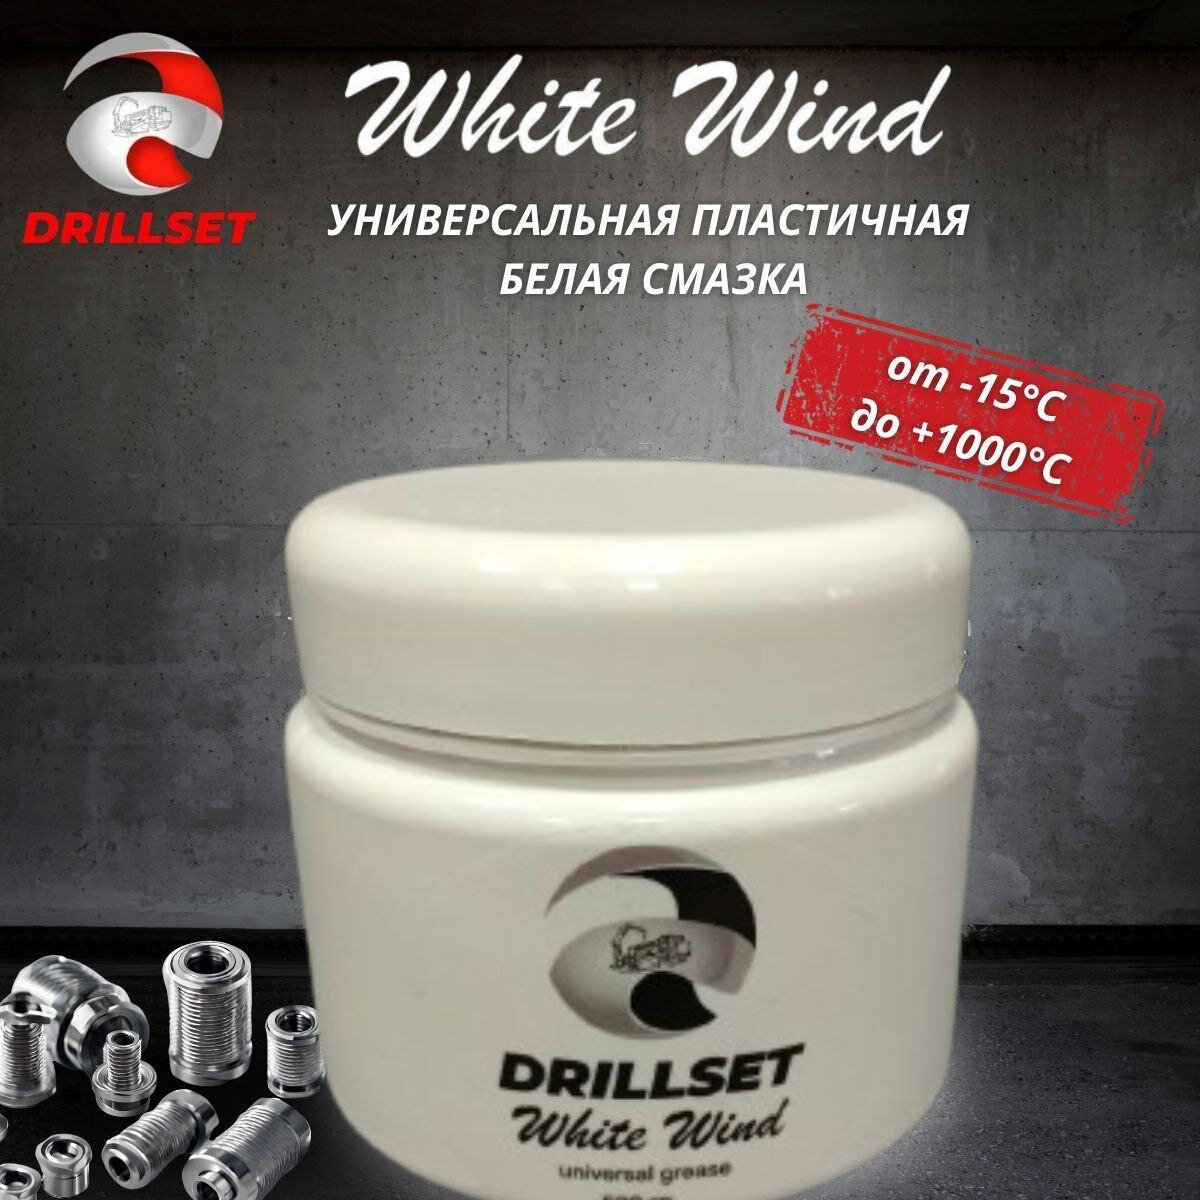 Универсальная пластичная белая смазка DRILLSET WHITE WIND 500мл.